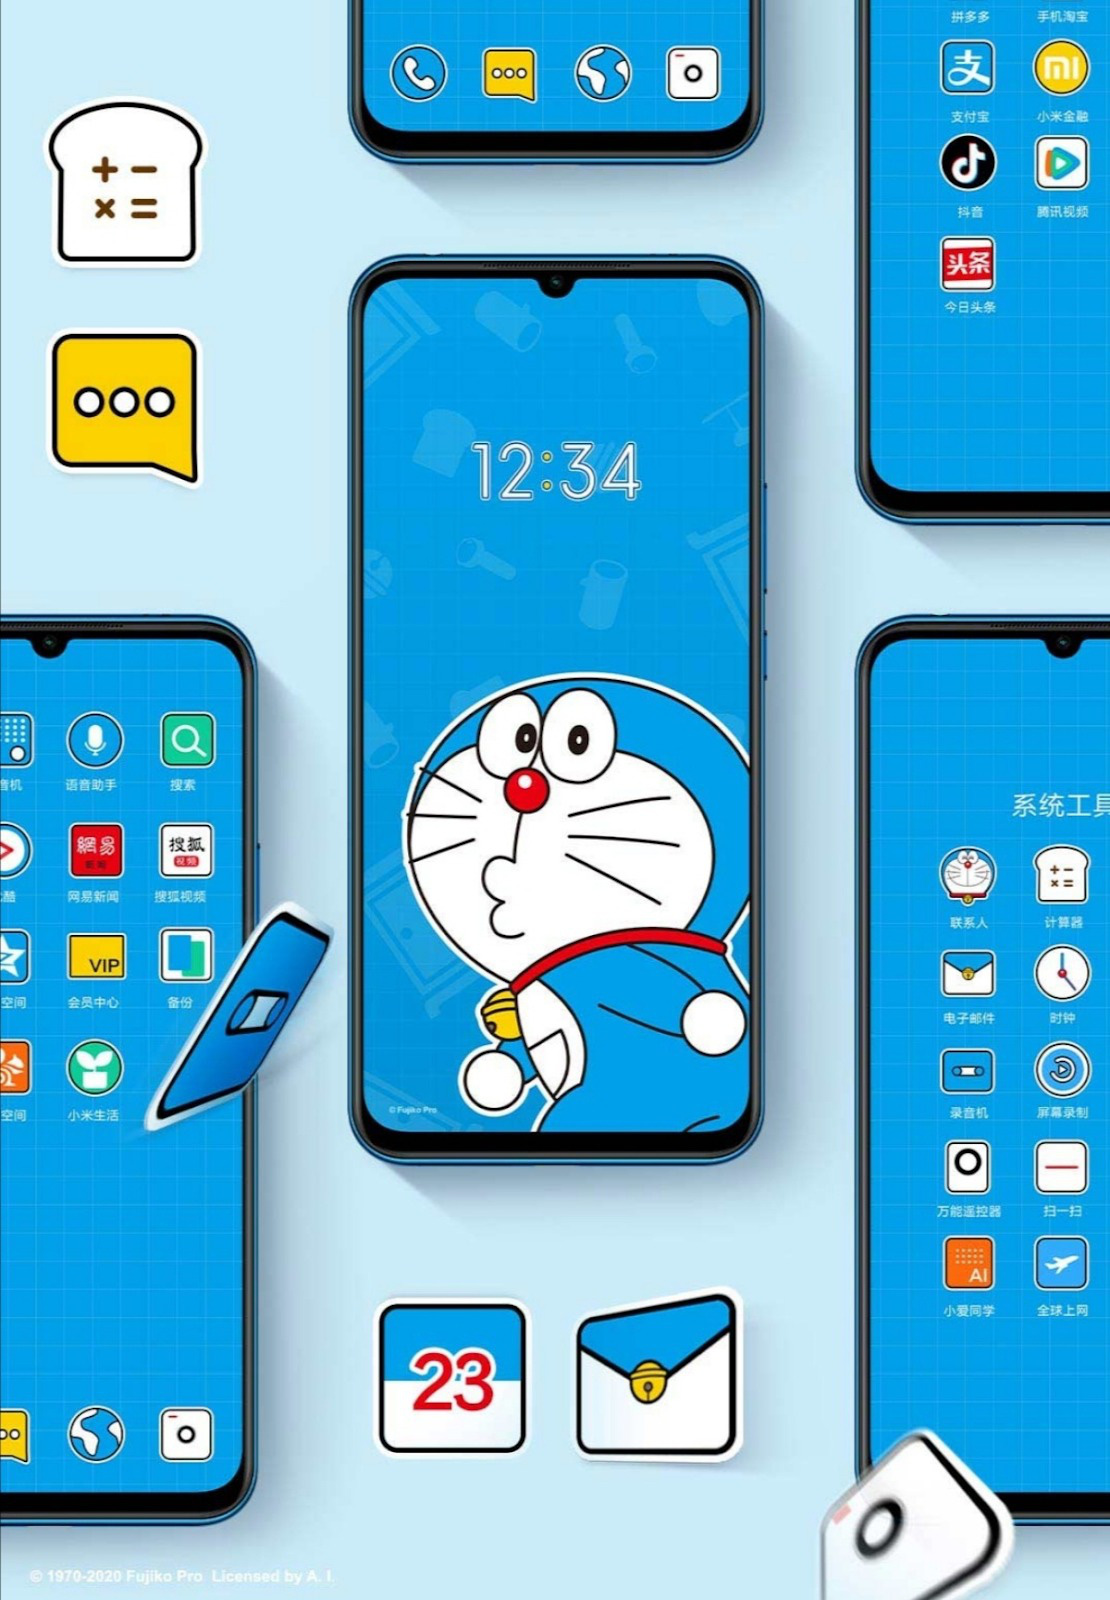 Nếu bạn từng yêu thích và trẻ con, bạn không thể bỏ qua Doraemon - chú mèo máy thông minh nhưng đáng yêu với túi đồ chứa đầy các phép thuật bá đạo được yêu thích trên toàn thế giới. Hãy xem hình ảnh liên quan để tìm hiểu thêm về ước mơ trẻ thơ của bạn!